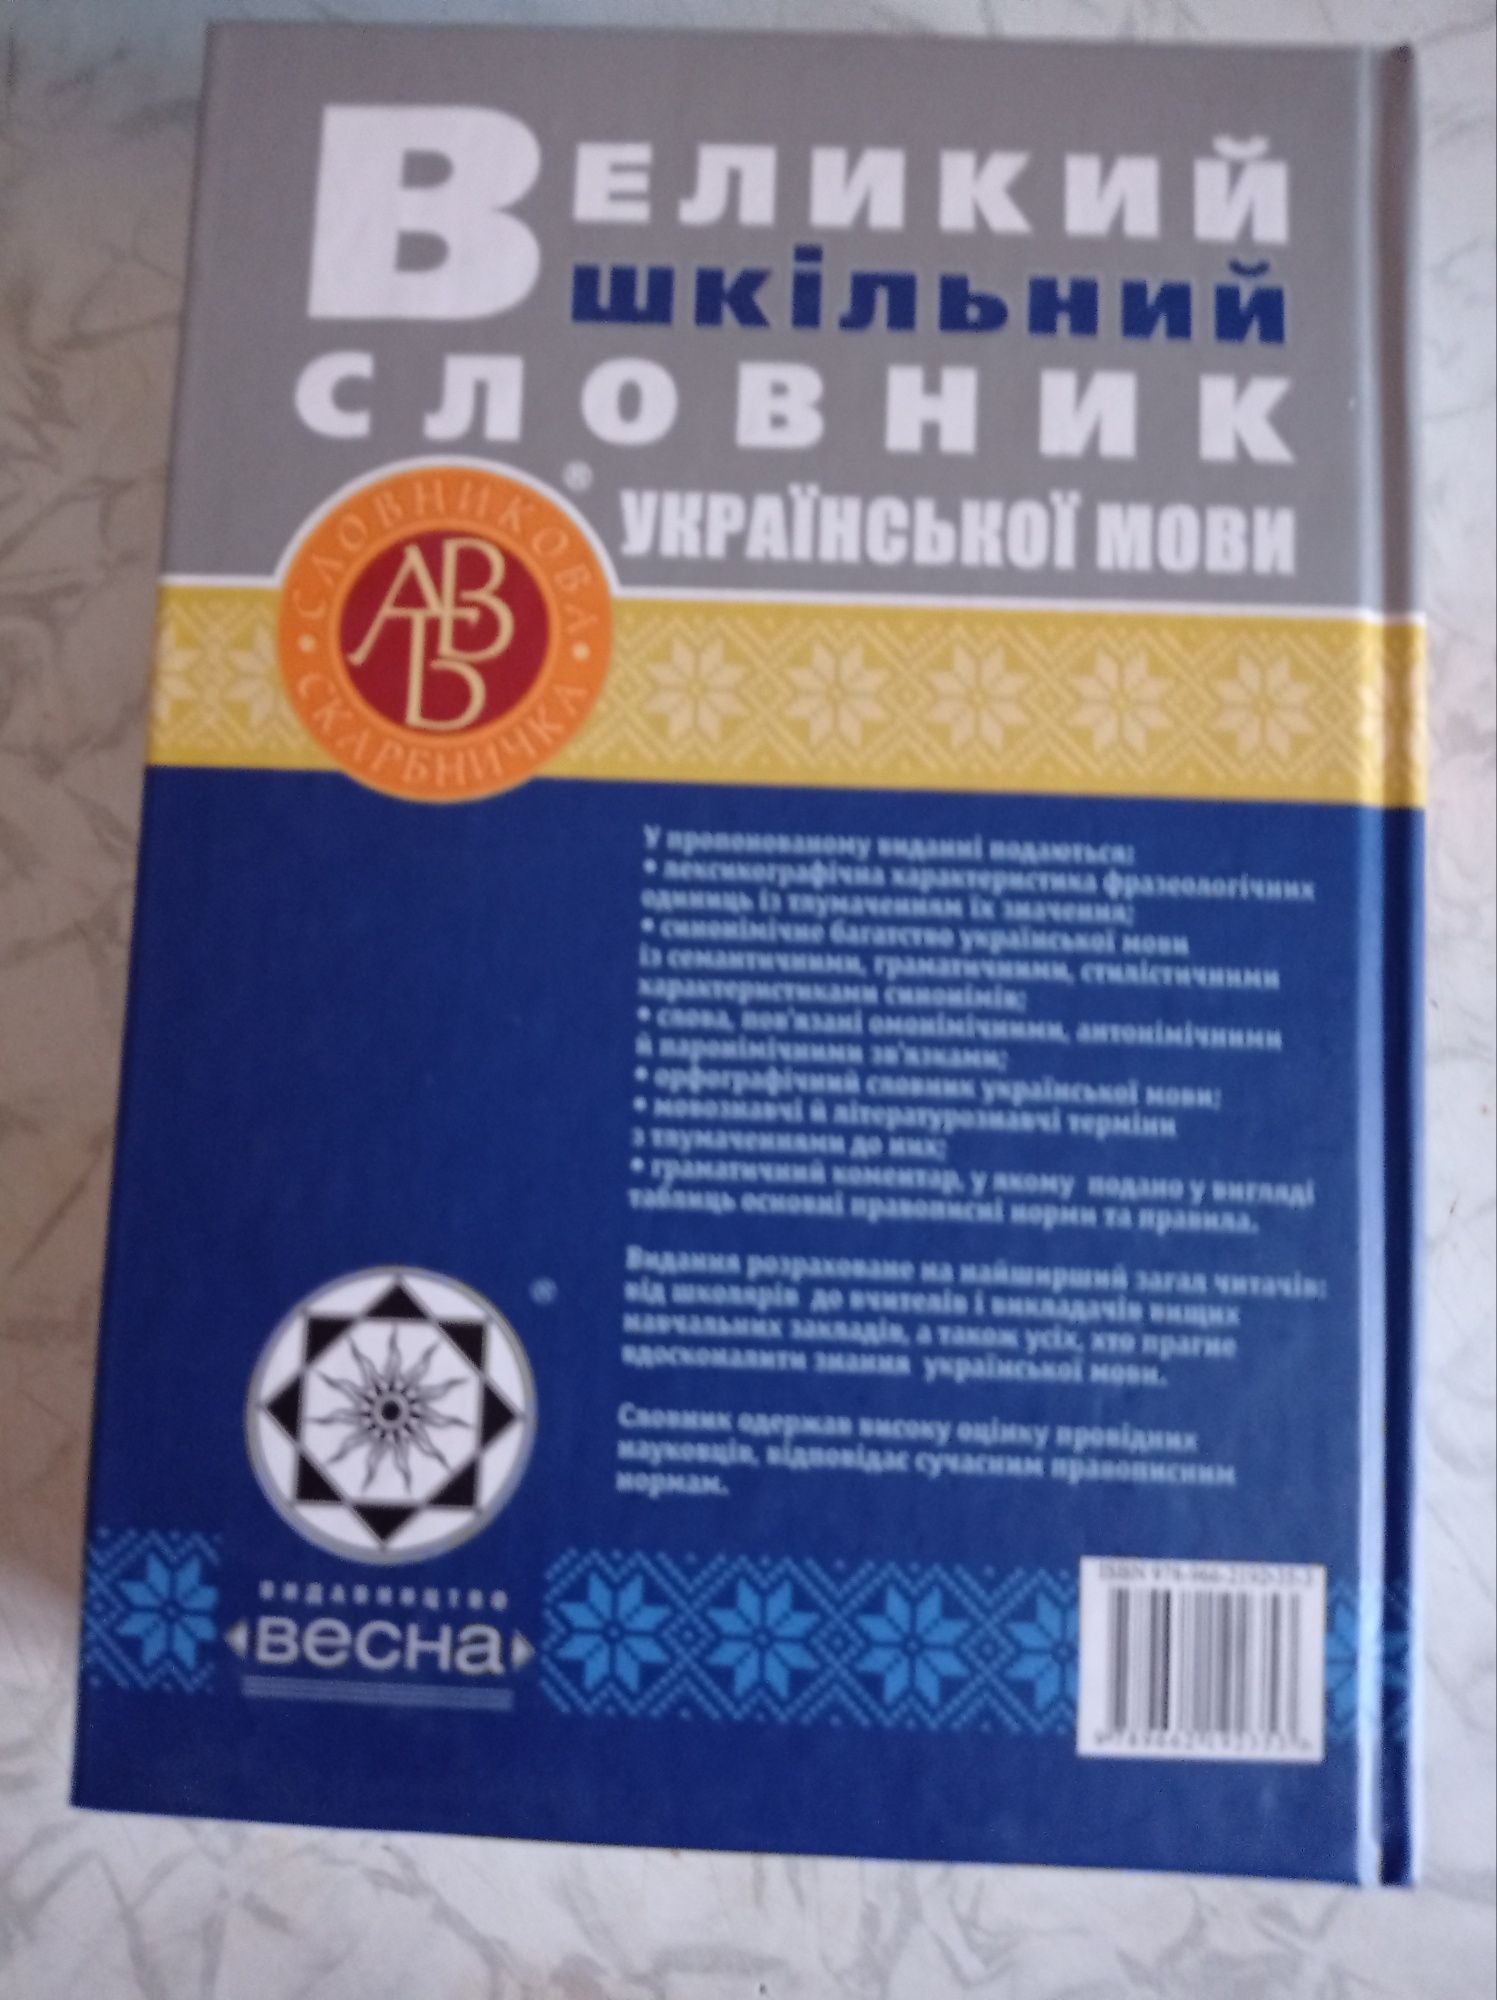 Великий шкільний словник, 50 грн.